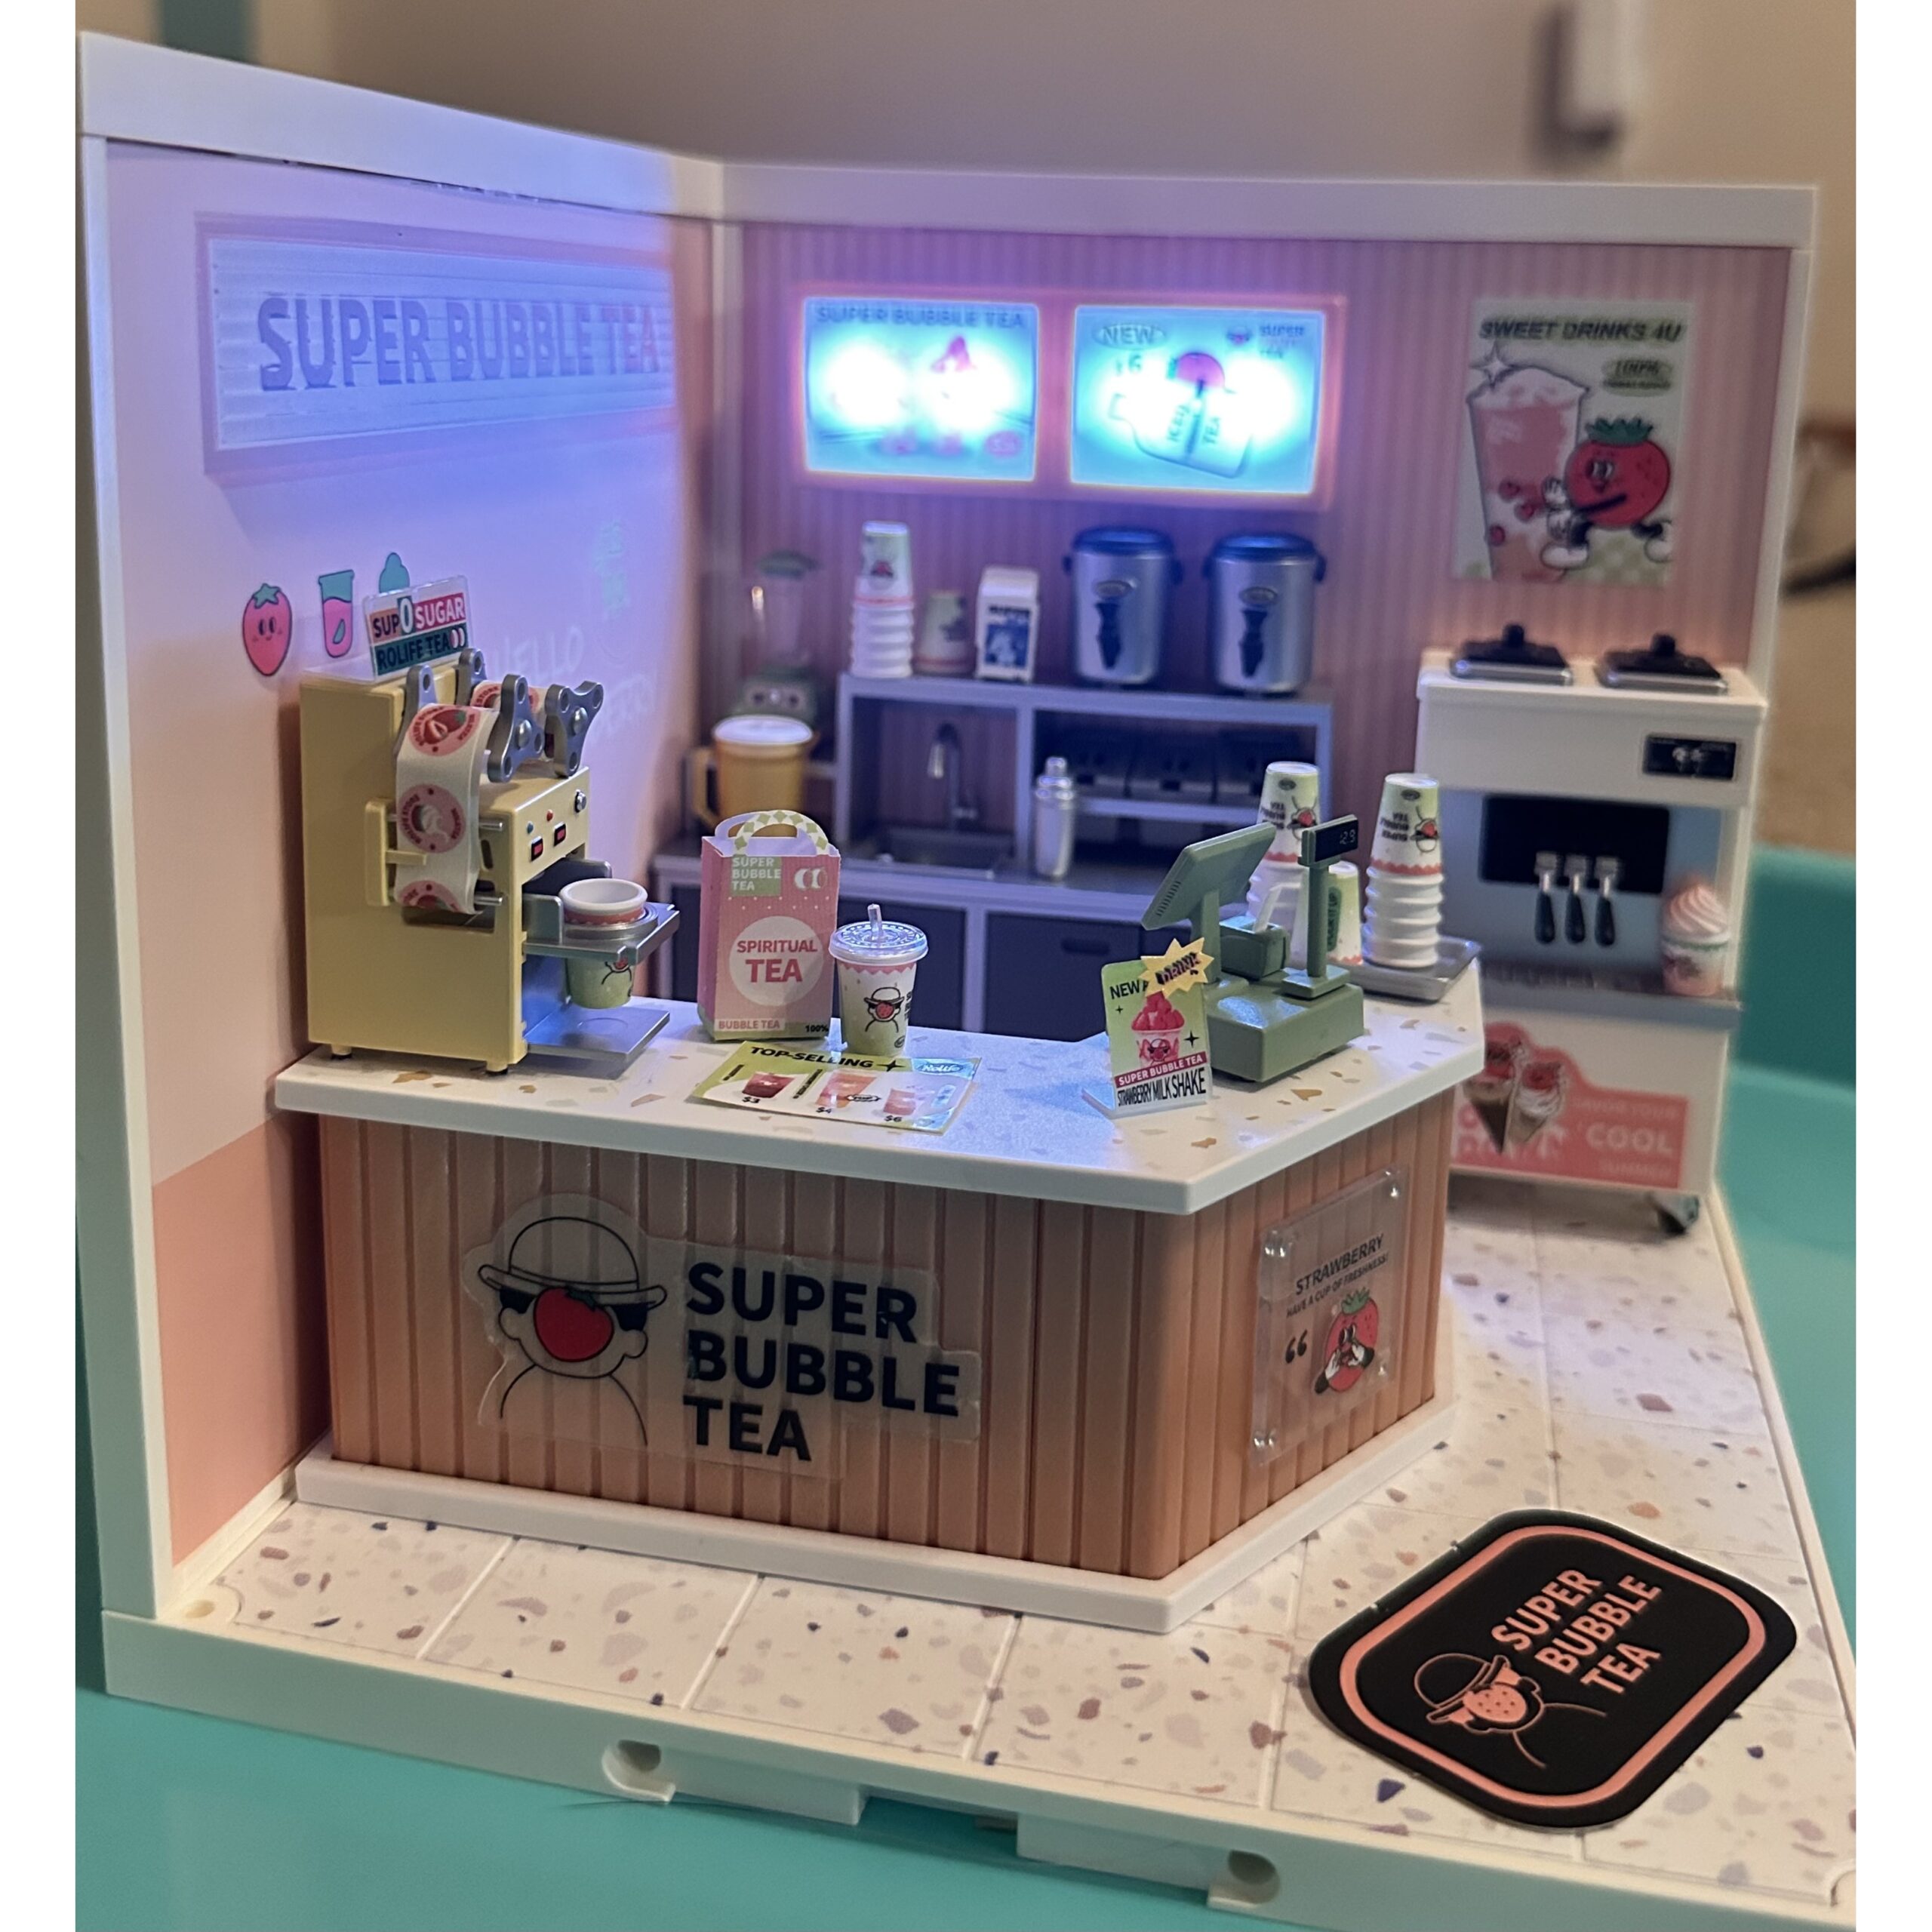 Double Joy Bubble Tea Shop Rolife (Super Creator Series) 3D DIY Miniature House Kit (2)